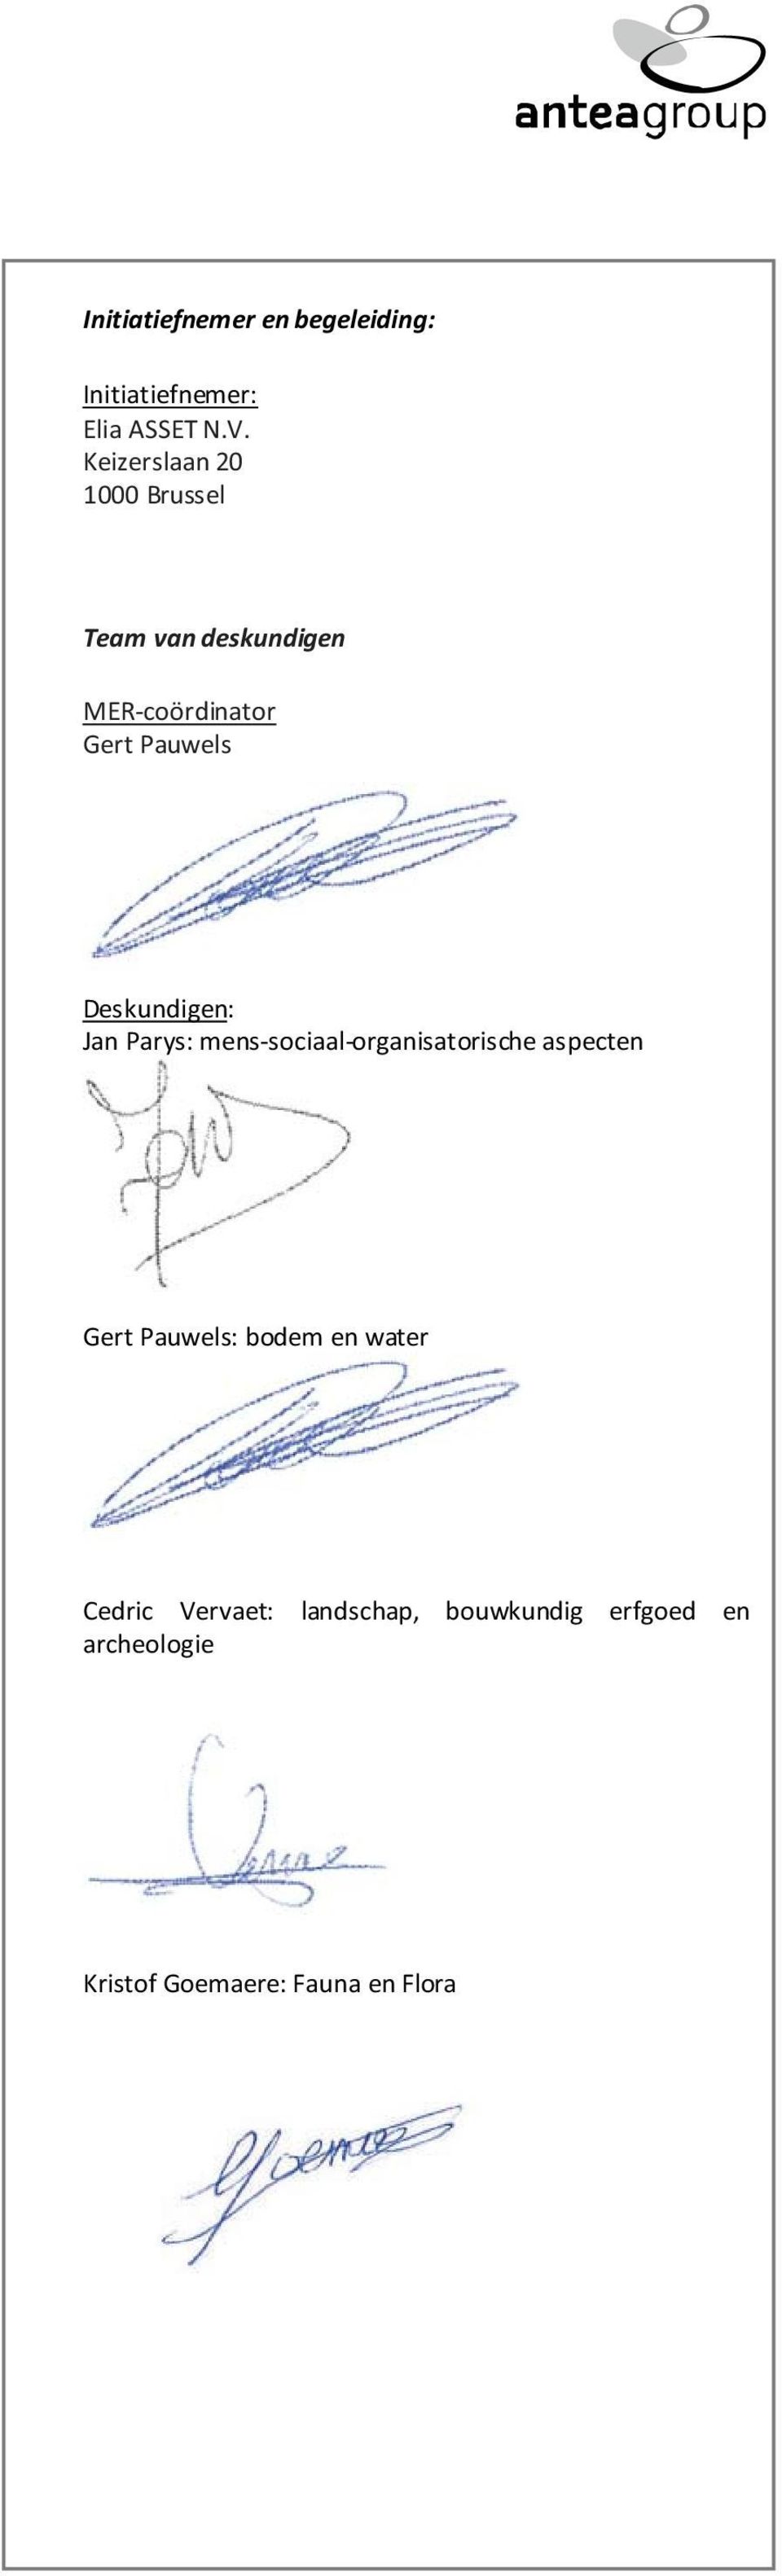 Deskundigen: Jan Parys: mens-sociaal-organisatorische aspecten Gert Pauwels: